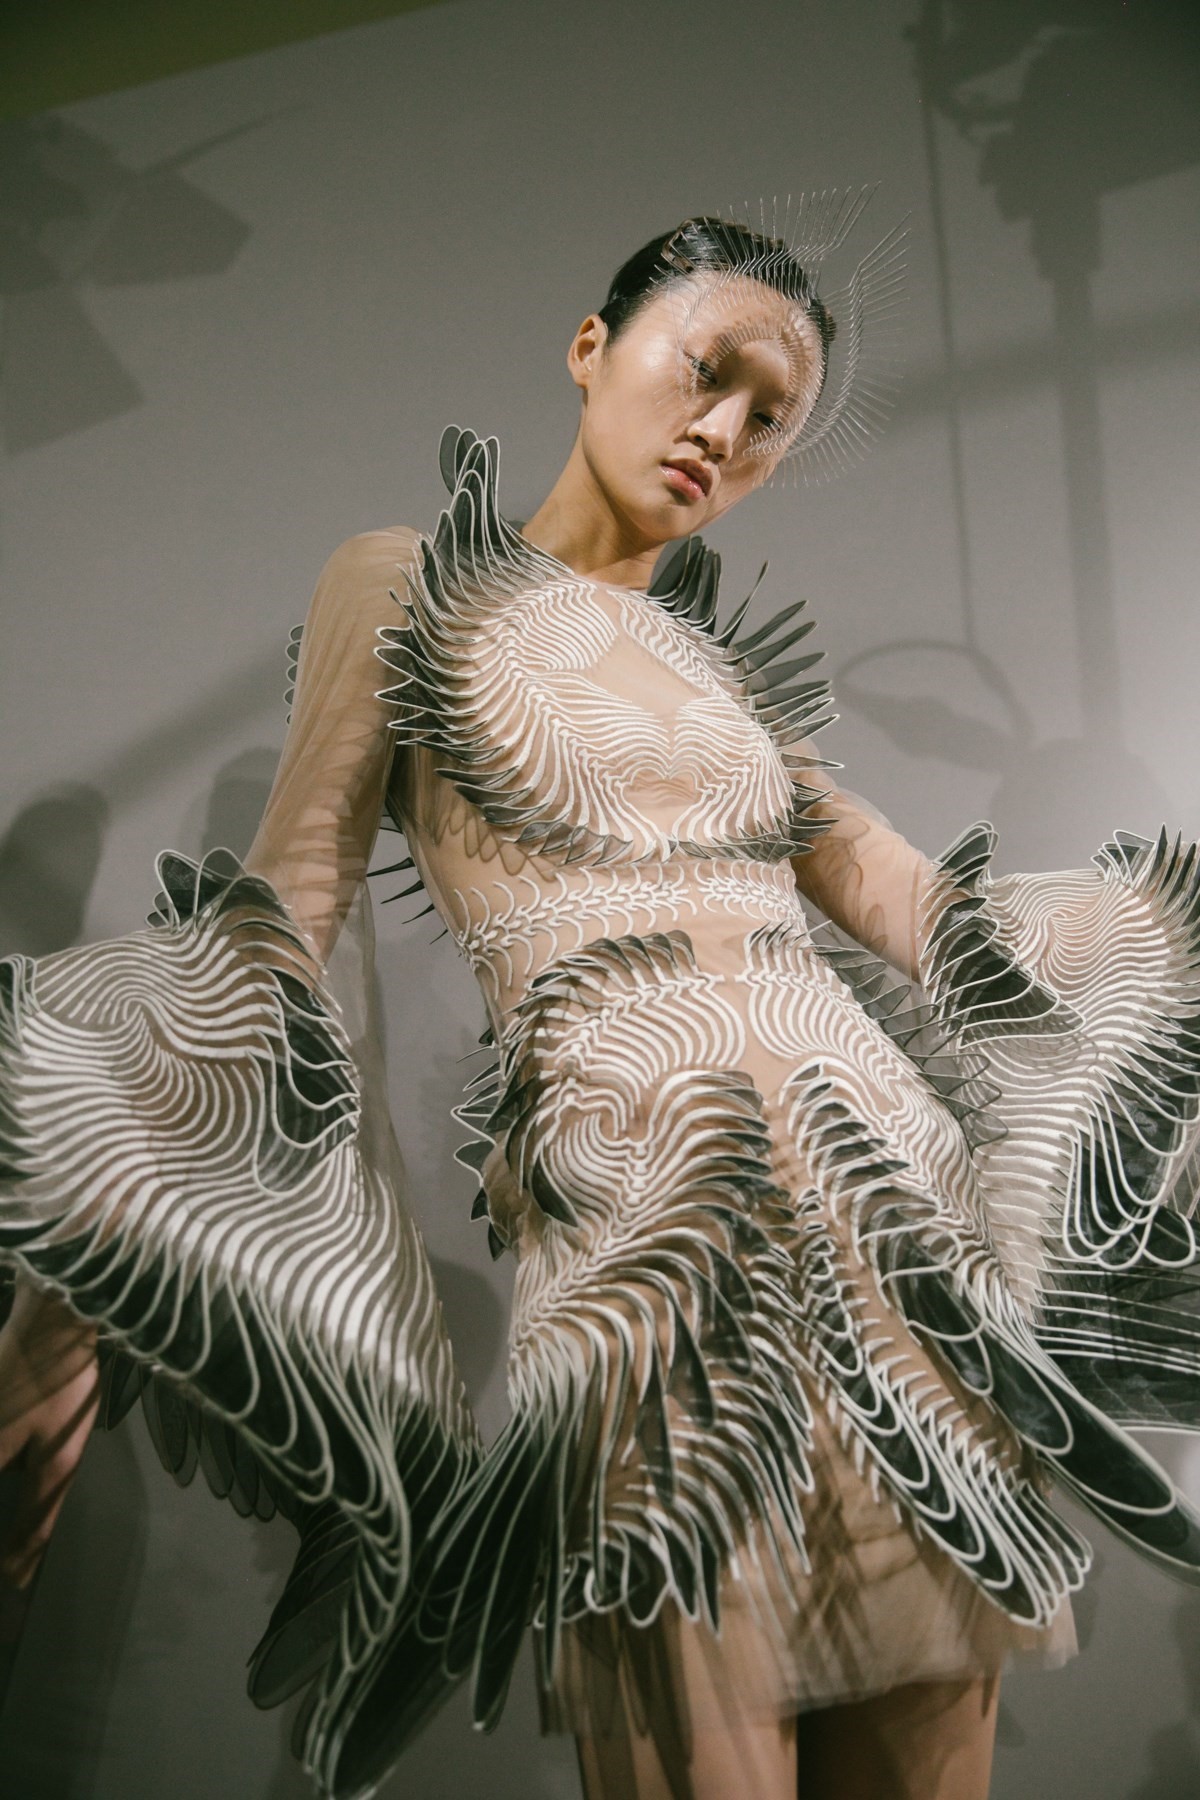 Go see Iris Van Herpen's hi-tech haute couture sculptures IRL in